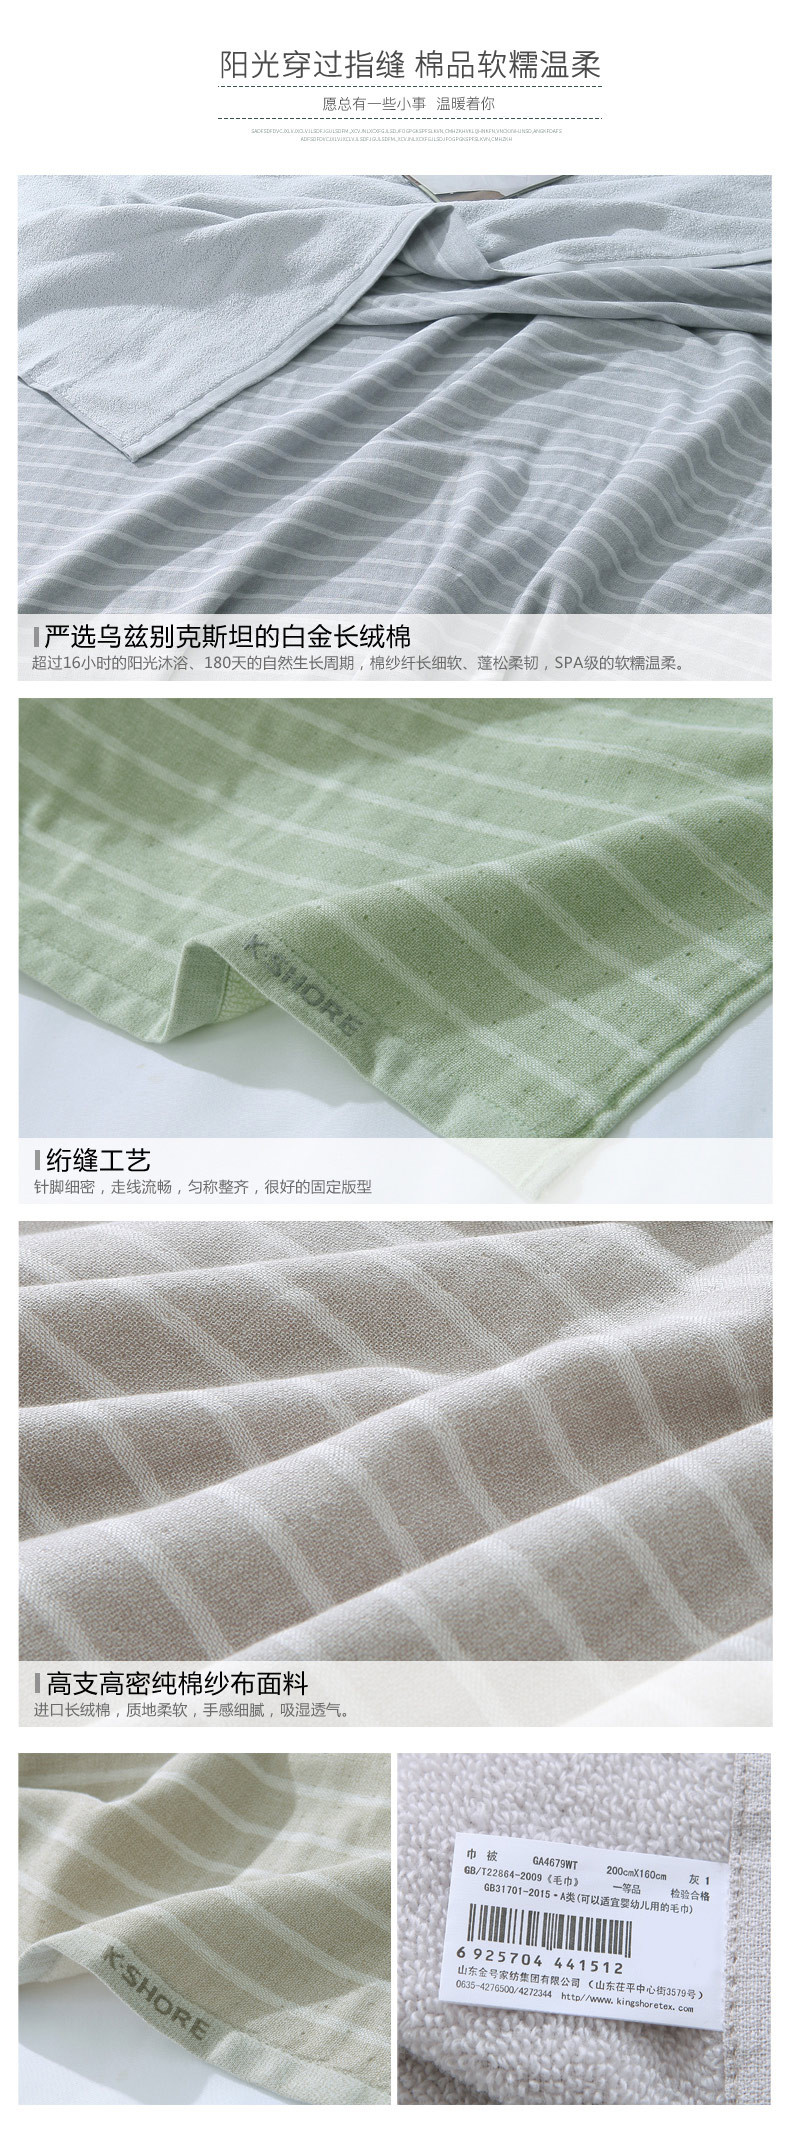 床上多功能毛巾被 双层纱布绗缝纯棉毛巾毯